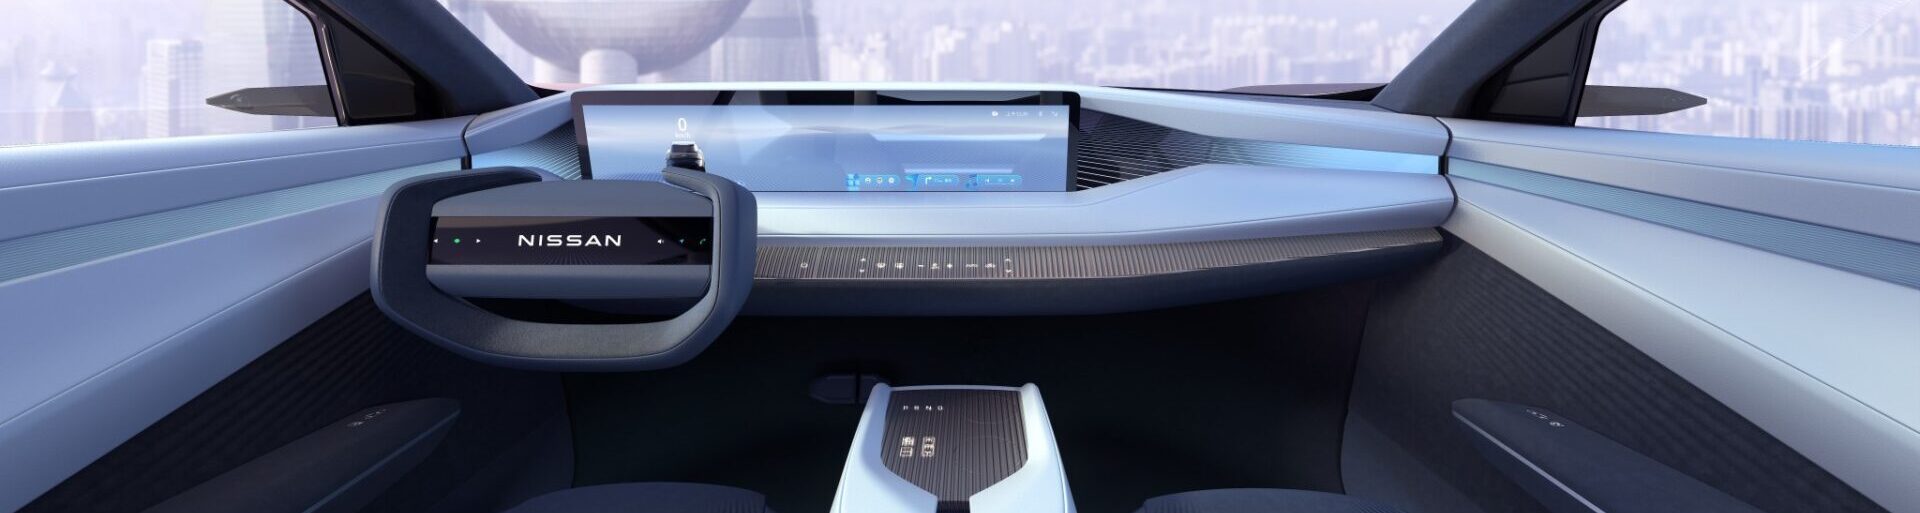 Nissan чествует Auto Shanghai 2023 с новой концепцией Arizona